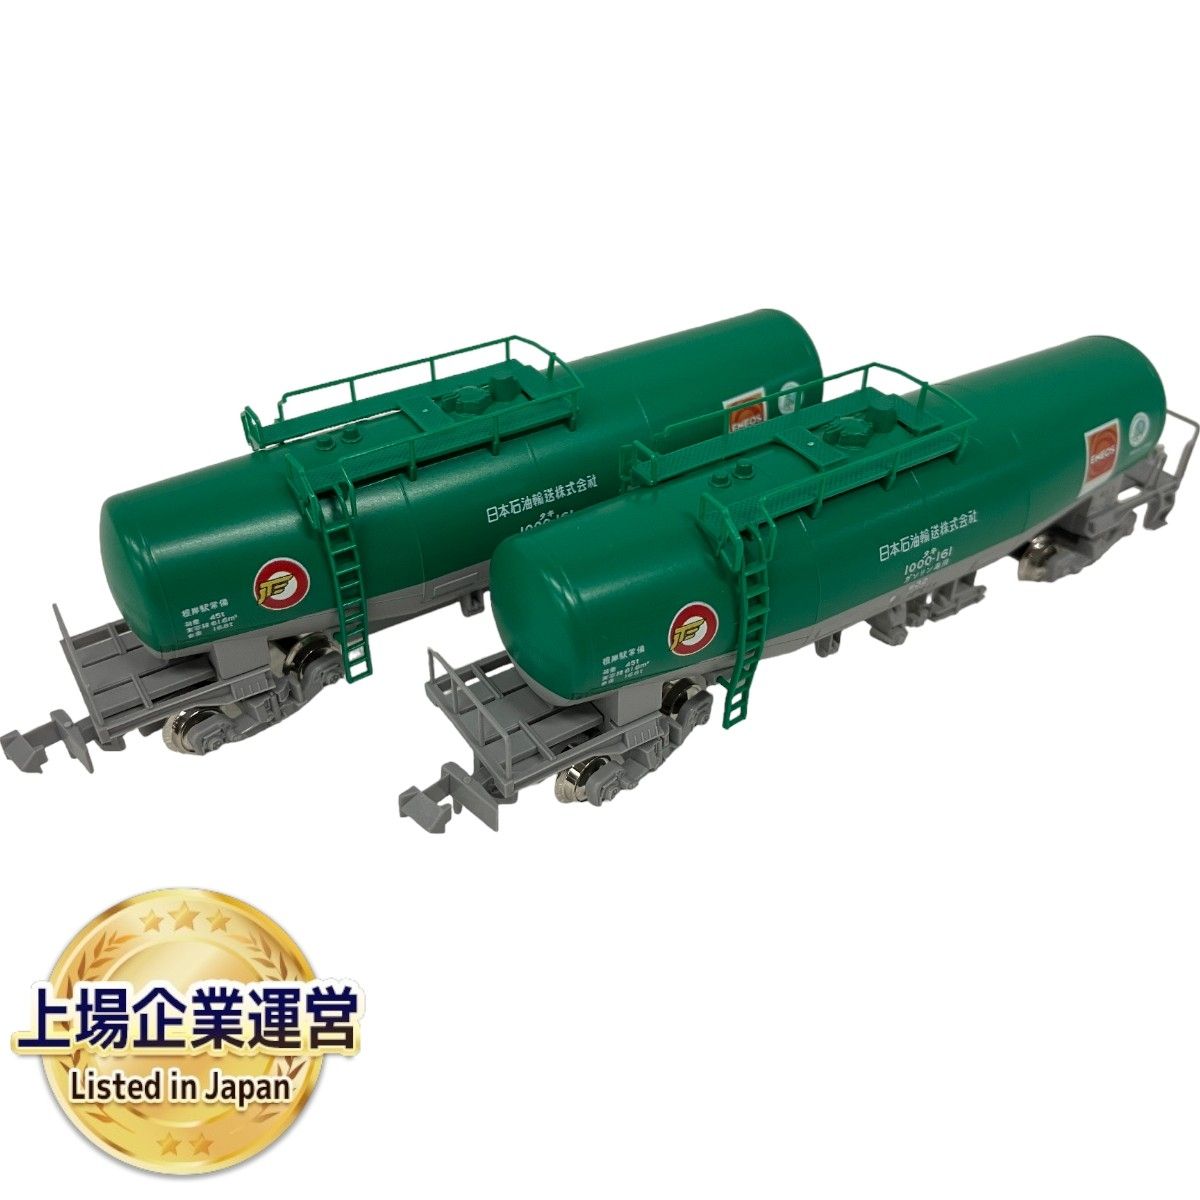 KATO カトー 8037-6 タキ1000日本石油輸送色 ENEOS エコレールマーク付 5両セット Nゲージ 鉄道模型 中古 S9014379